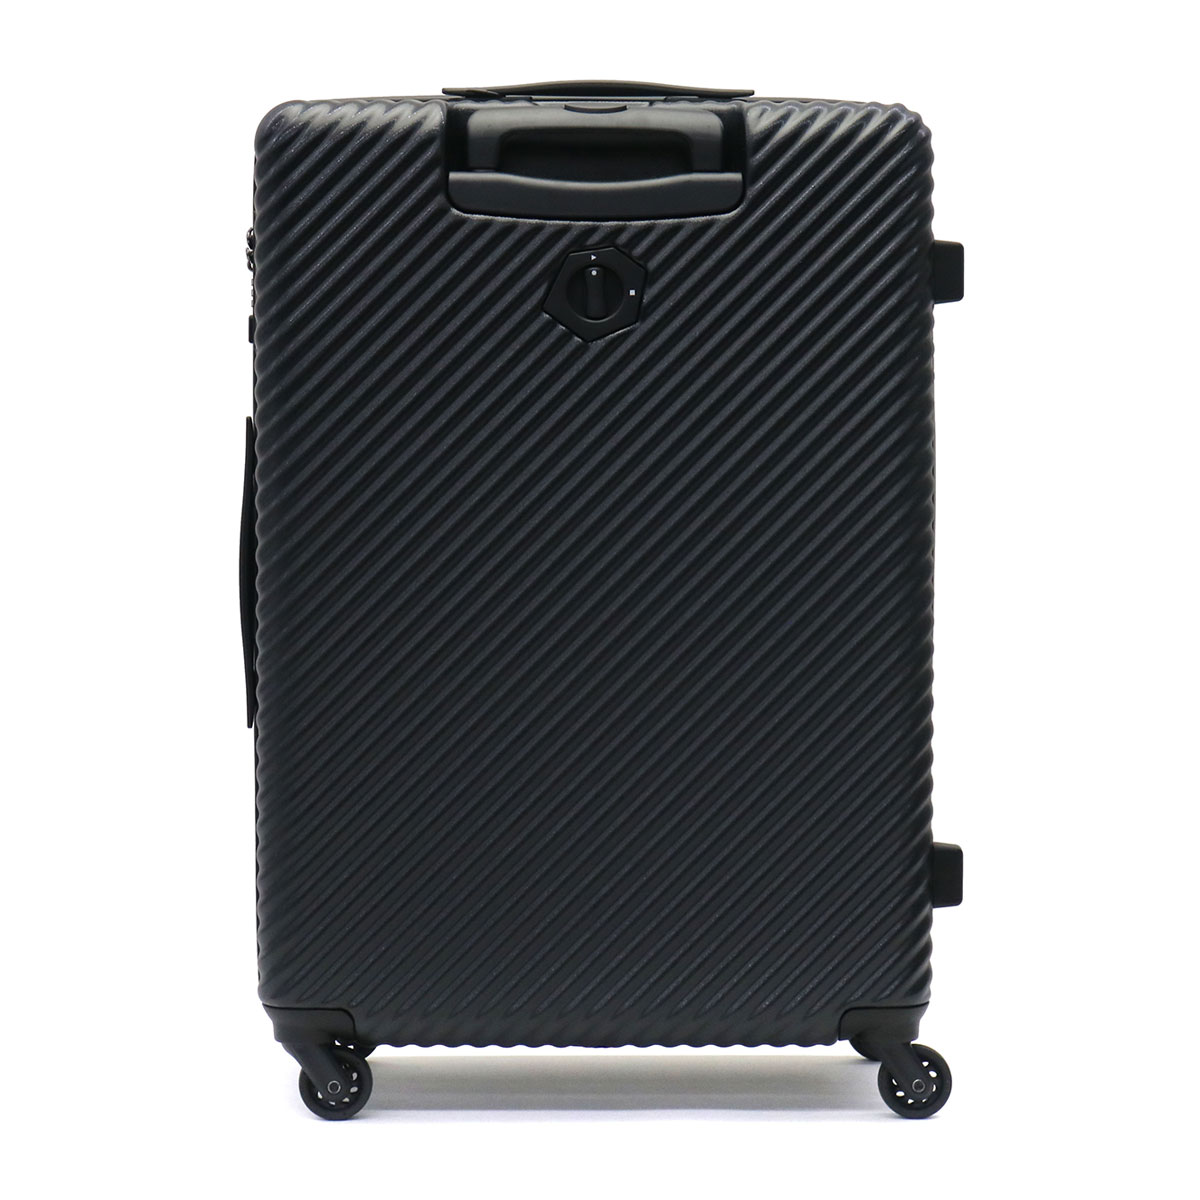 ハント スーツケース マイン ストッパー付き 65cm 75L 05747 無料預入受託サイズ 65 cm アネモネレッド